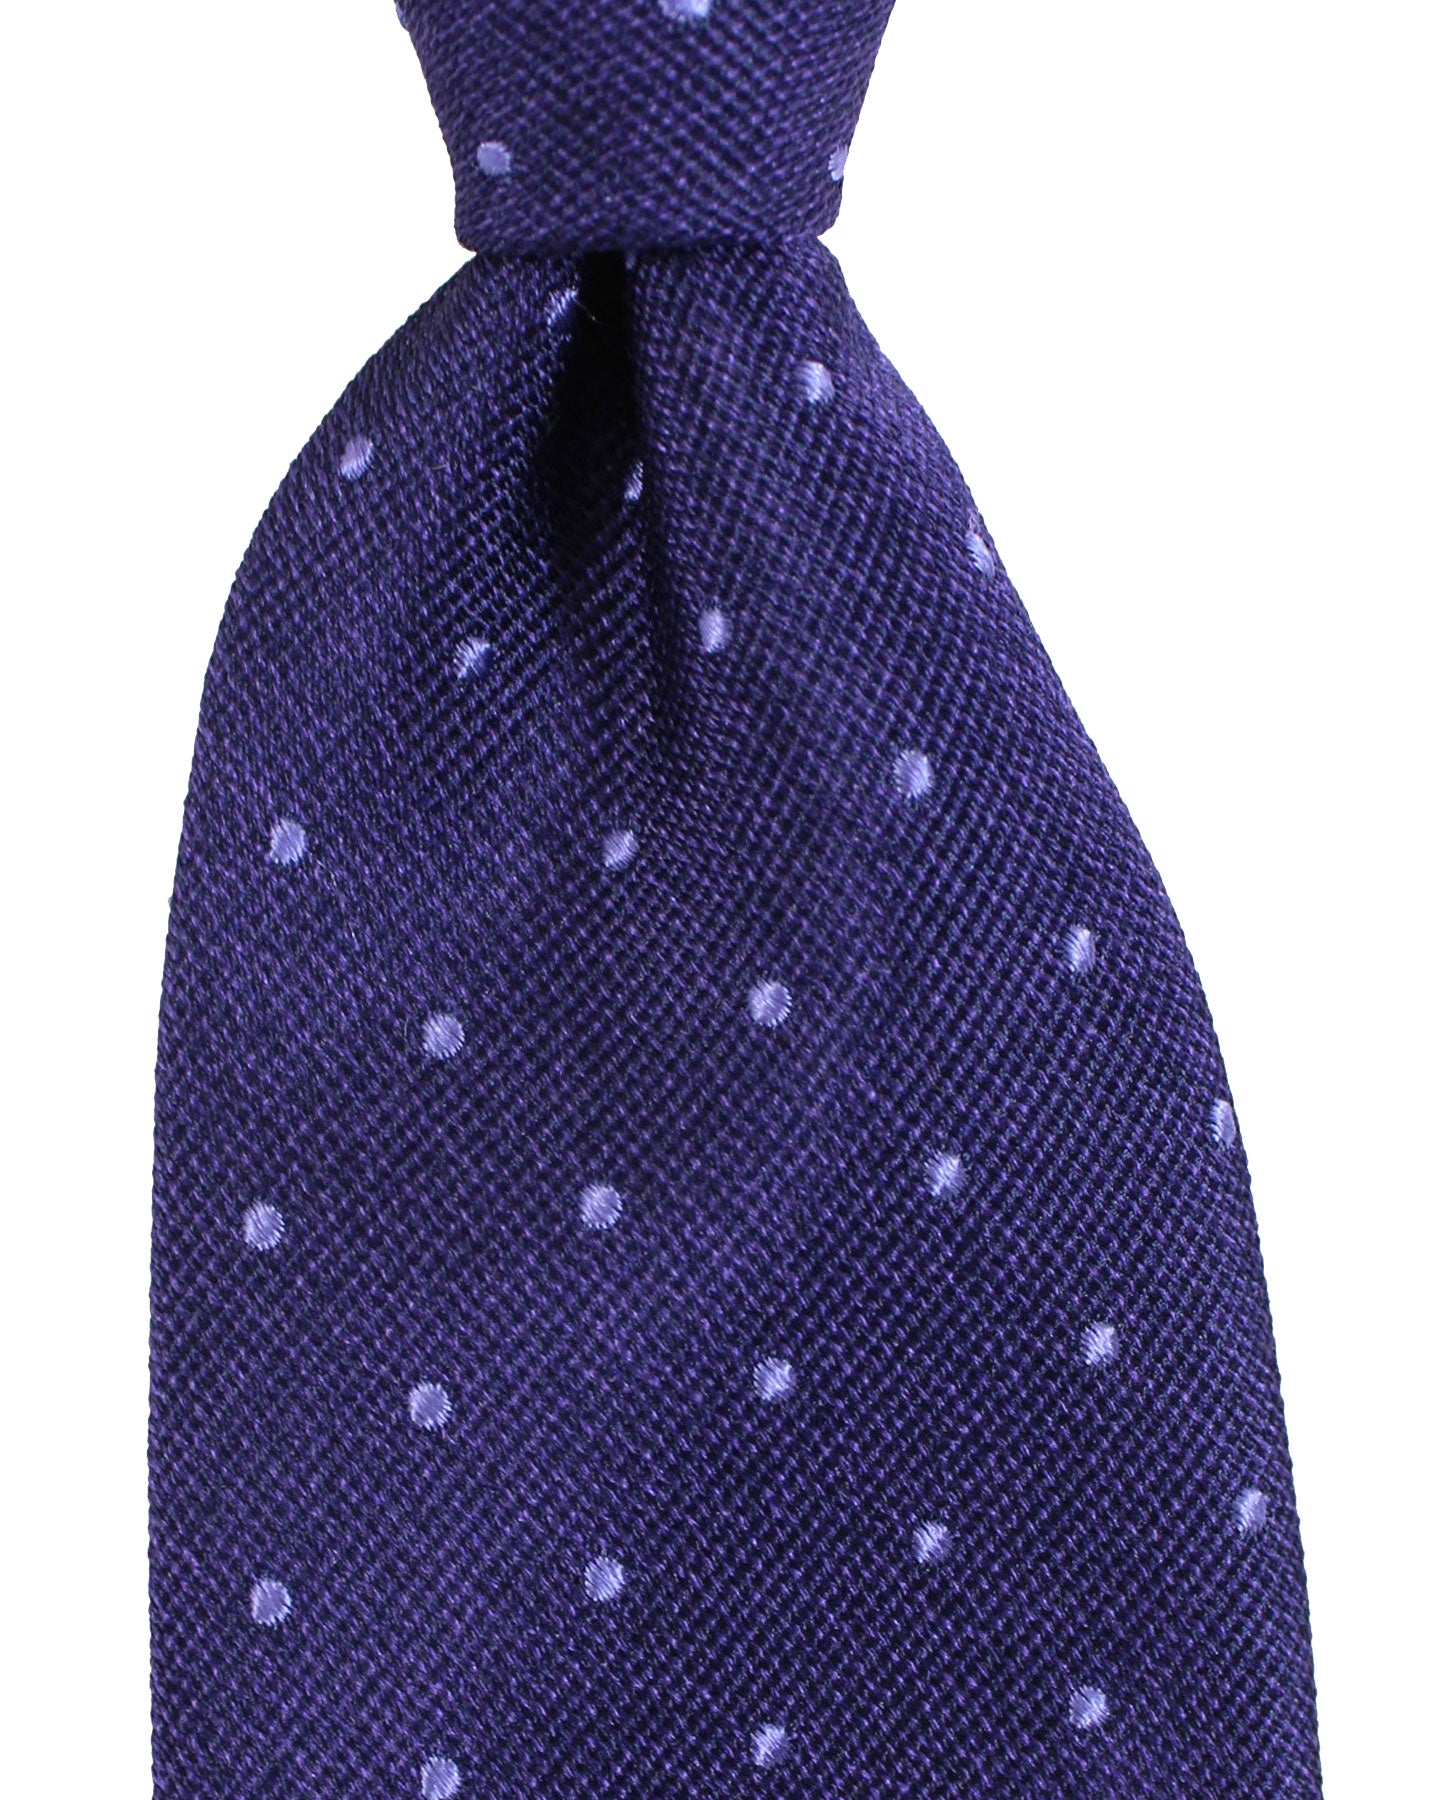 Tom Ford Silk Tie Purple Mini Dots